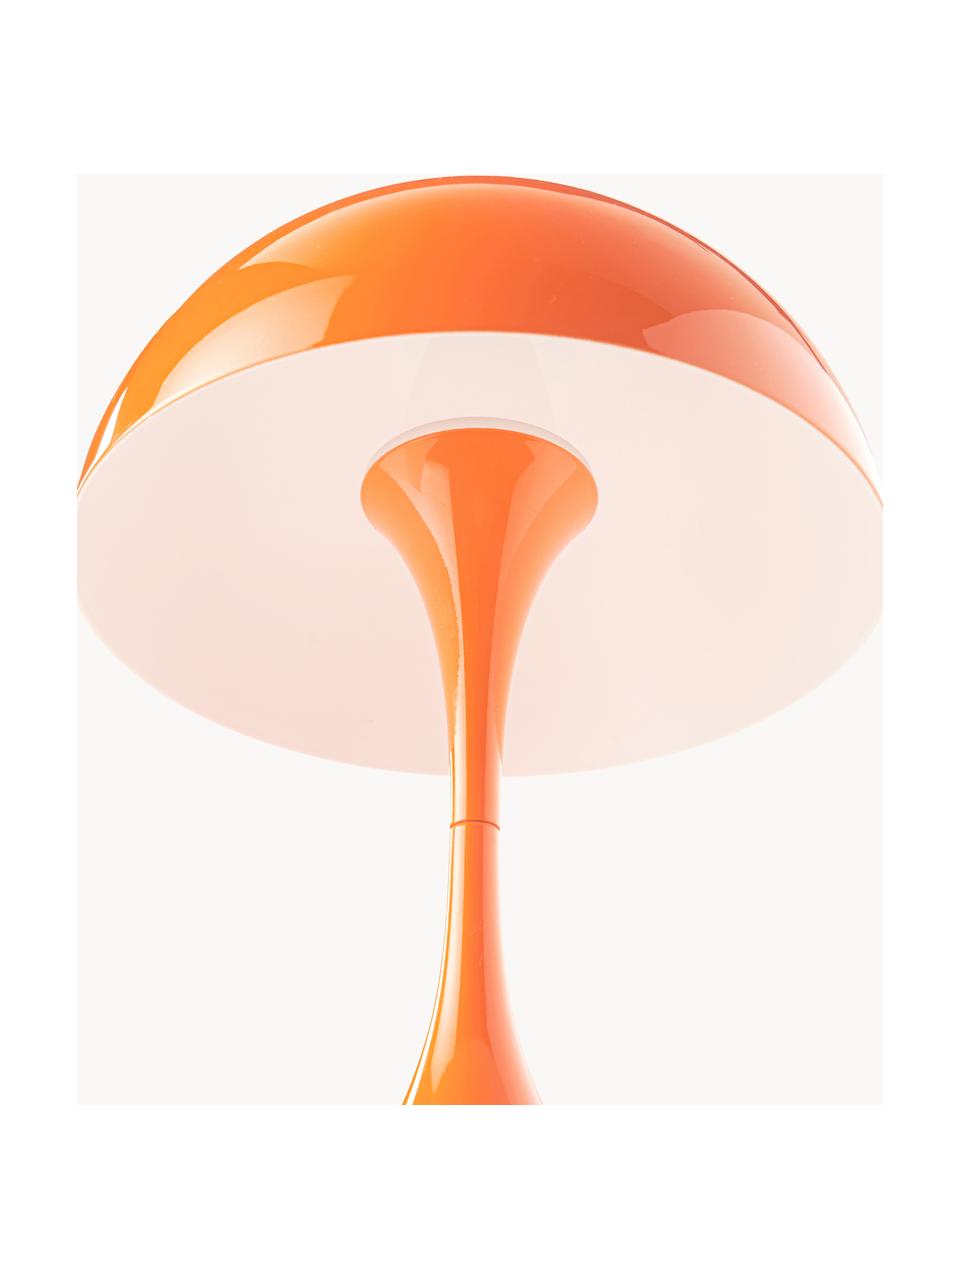 Mobilna lampa stołowa LED z funkcją przyciemniania Panthella, W 24 cm, Stelaż: aluminium powlekane, Pomarańczowa stal, Ø 16 x 24 cm